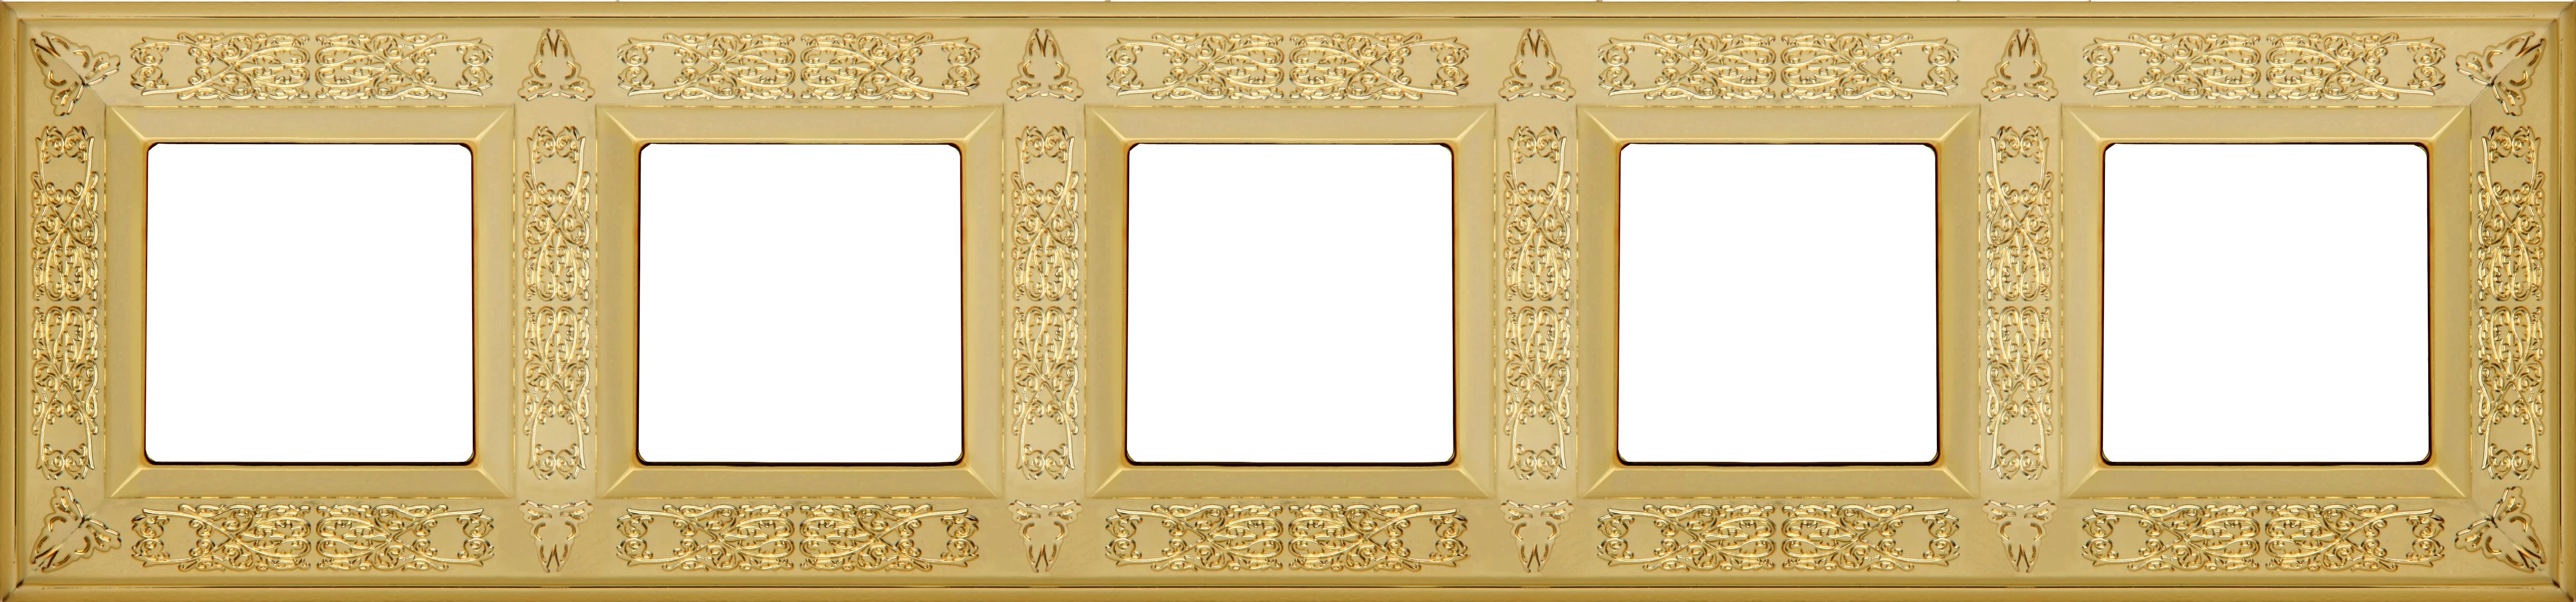  артикул FD01415OB название Рамка пятерная, цвет Светлое золото, Granada, Fede